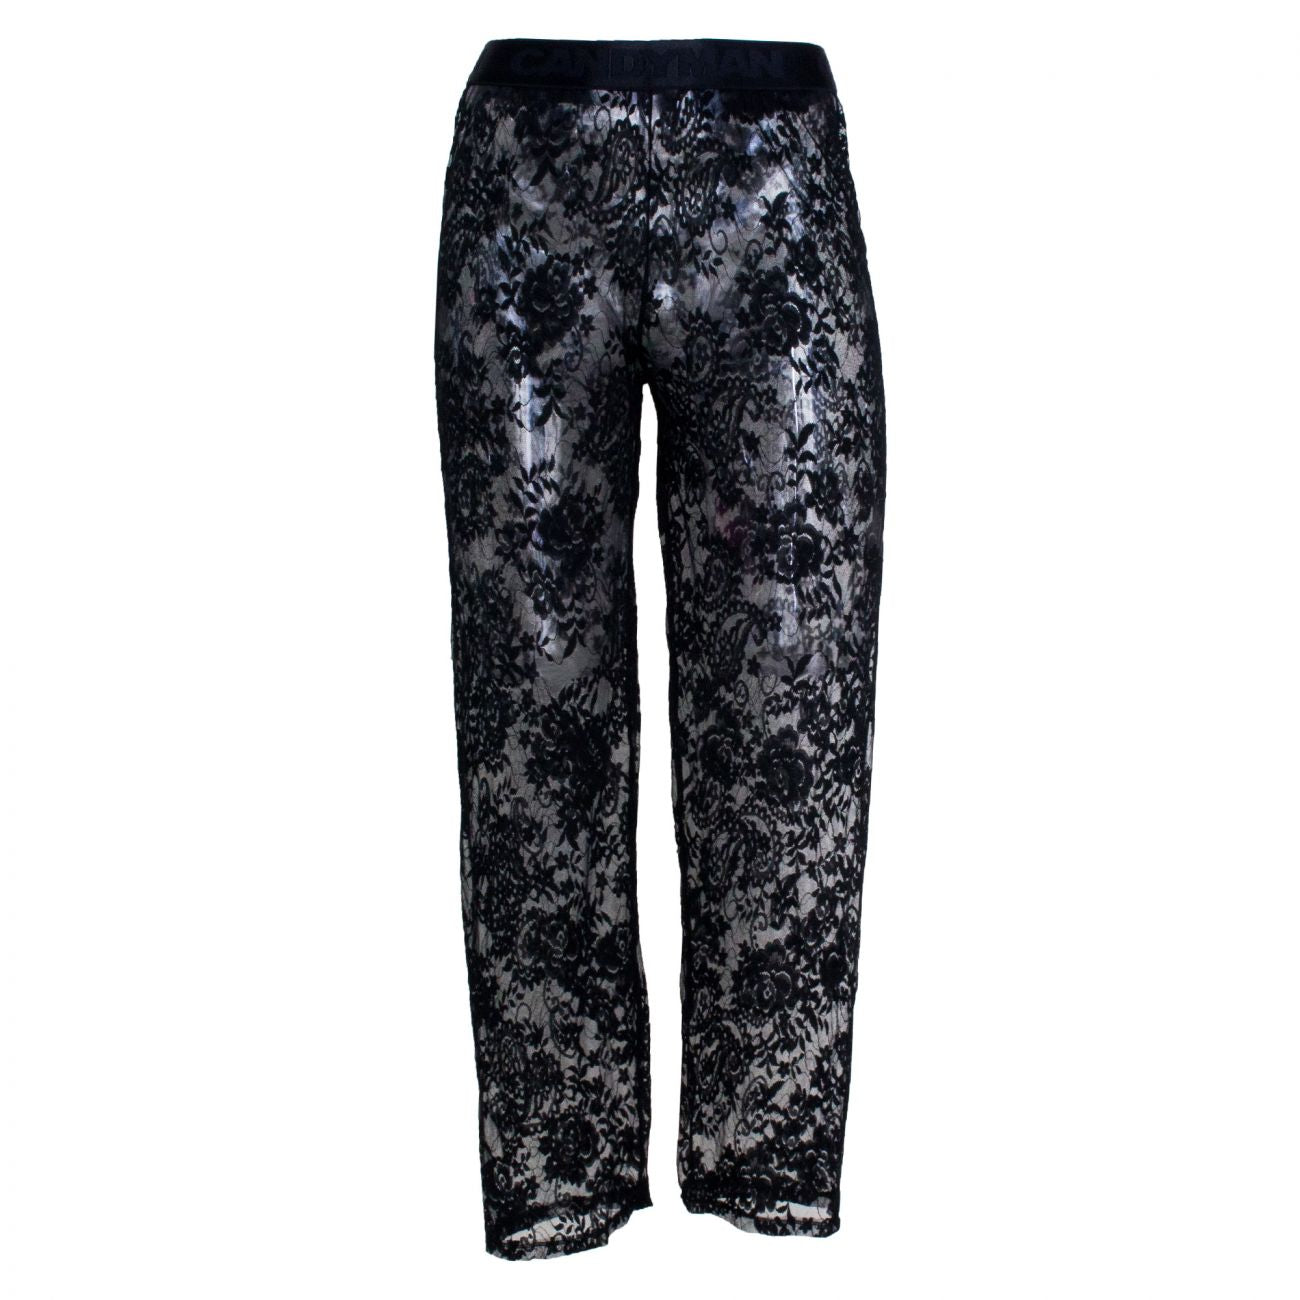 CandyMan 99234X Lace Lounge Pants Black Plus Sizes